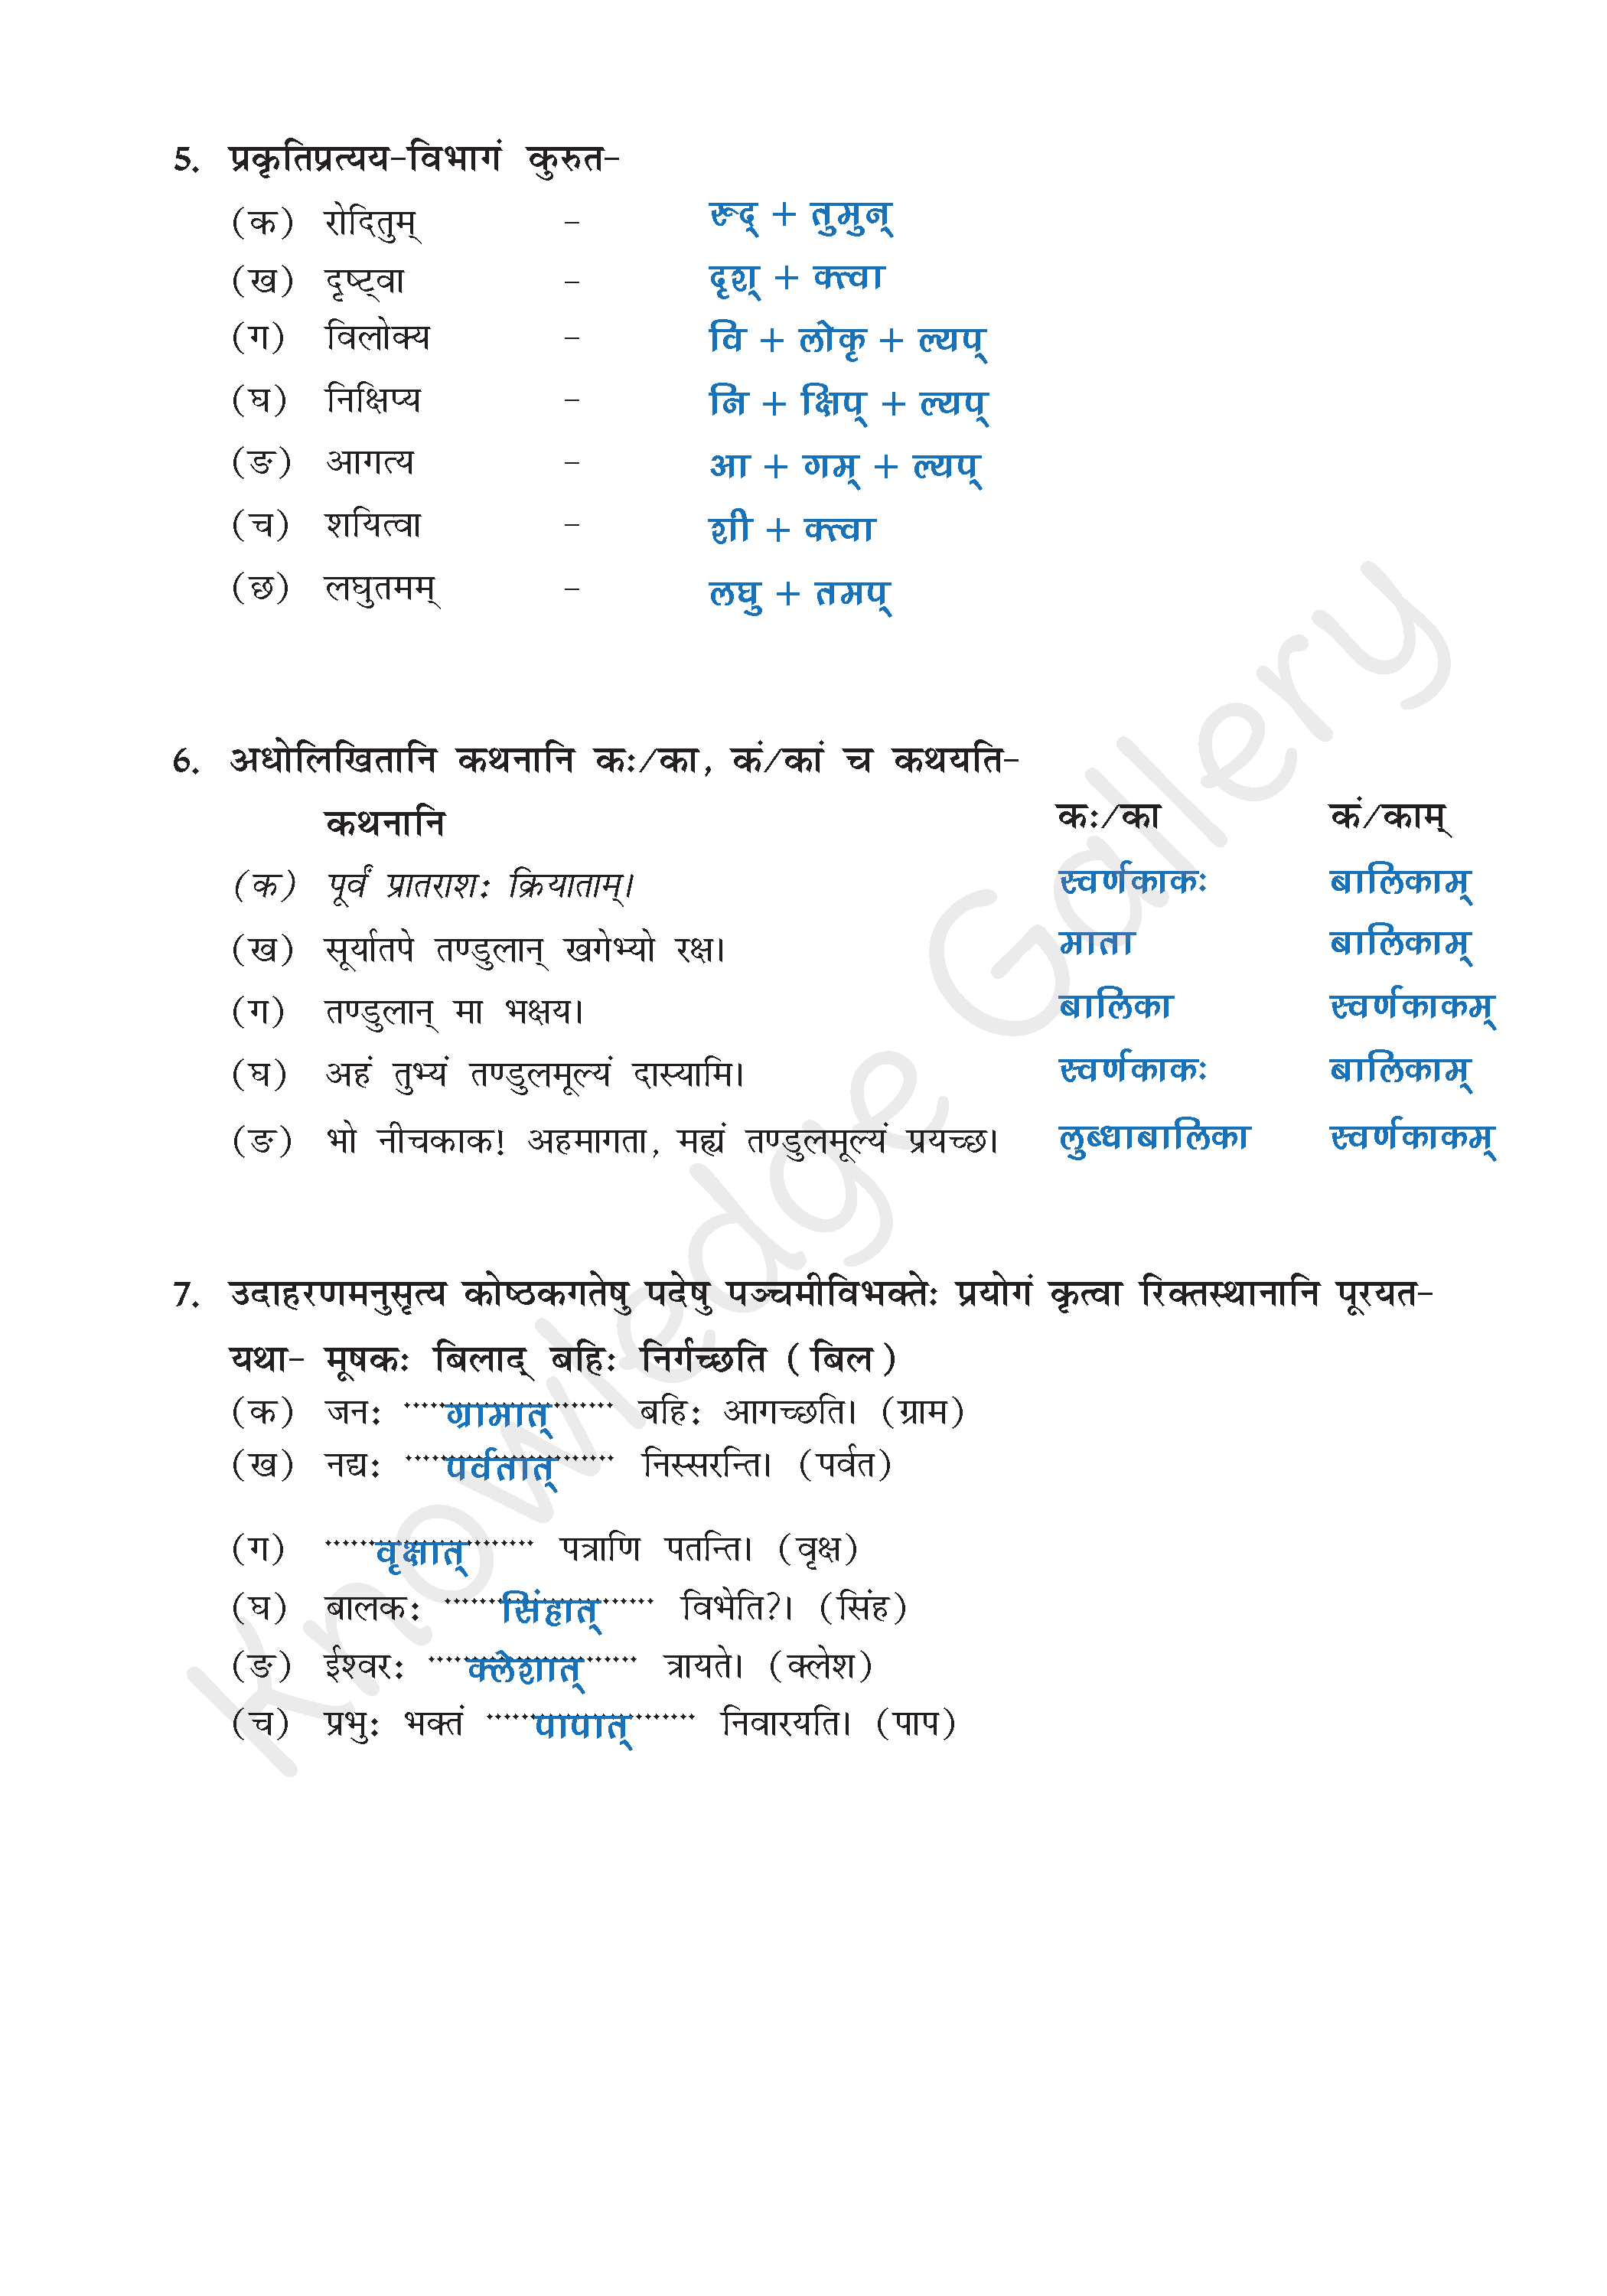 NCERT Solution For Class 9 Sanskrit Chapter 2 part 7